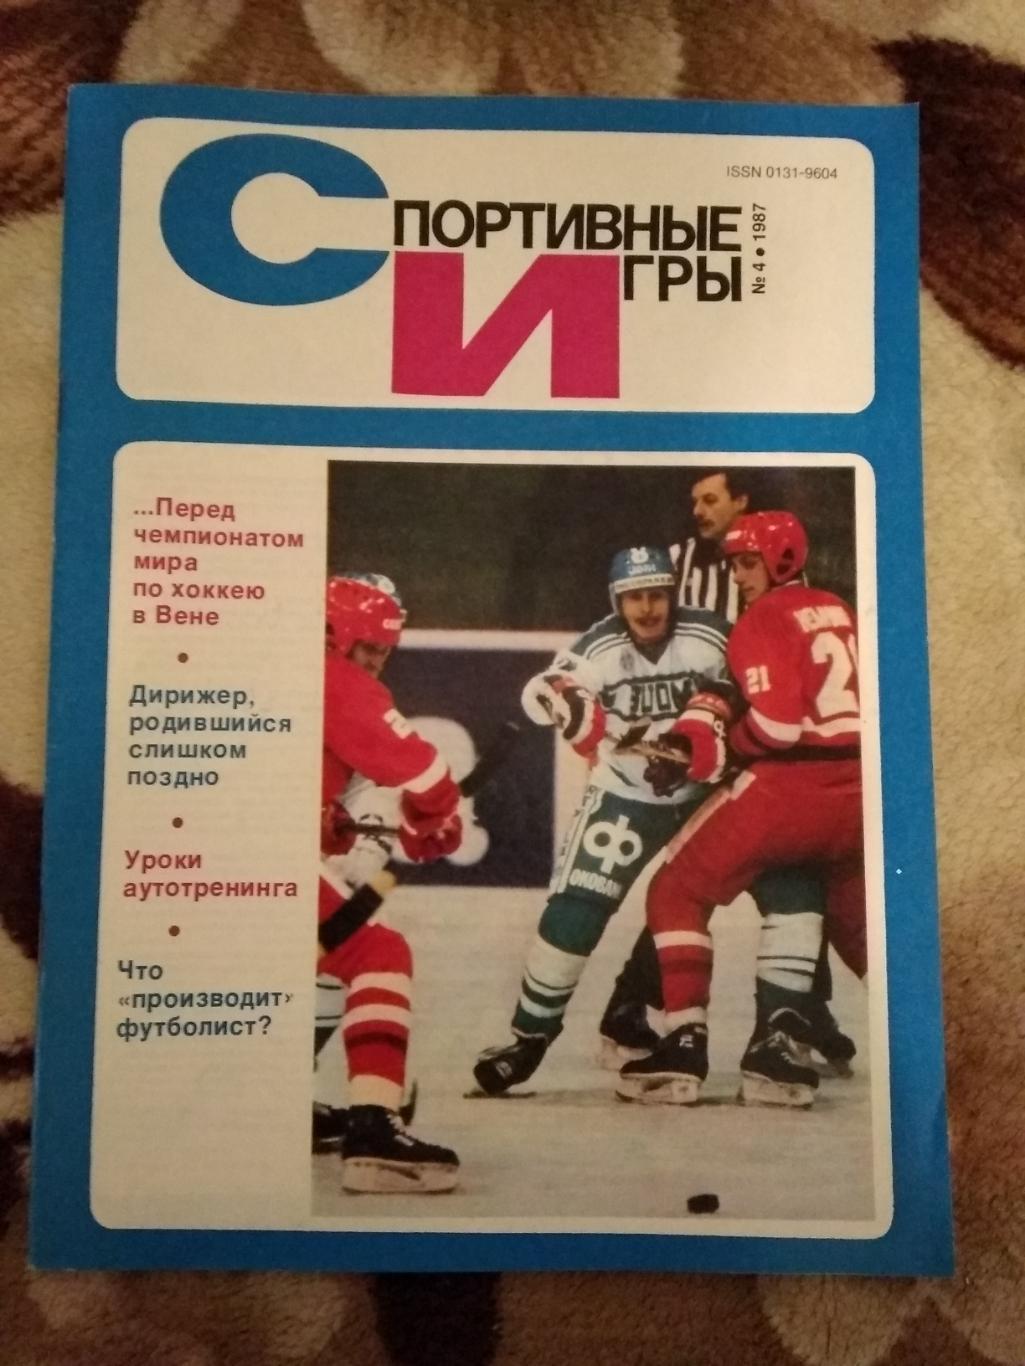 Журнал.Спортивные игры № 4 1987 г.